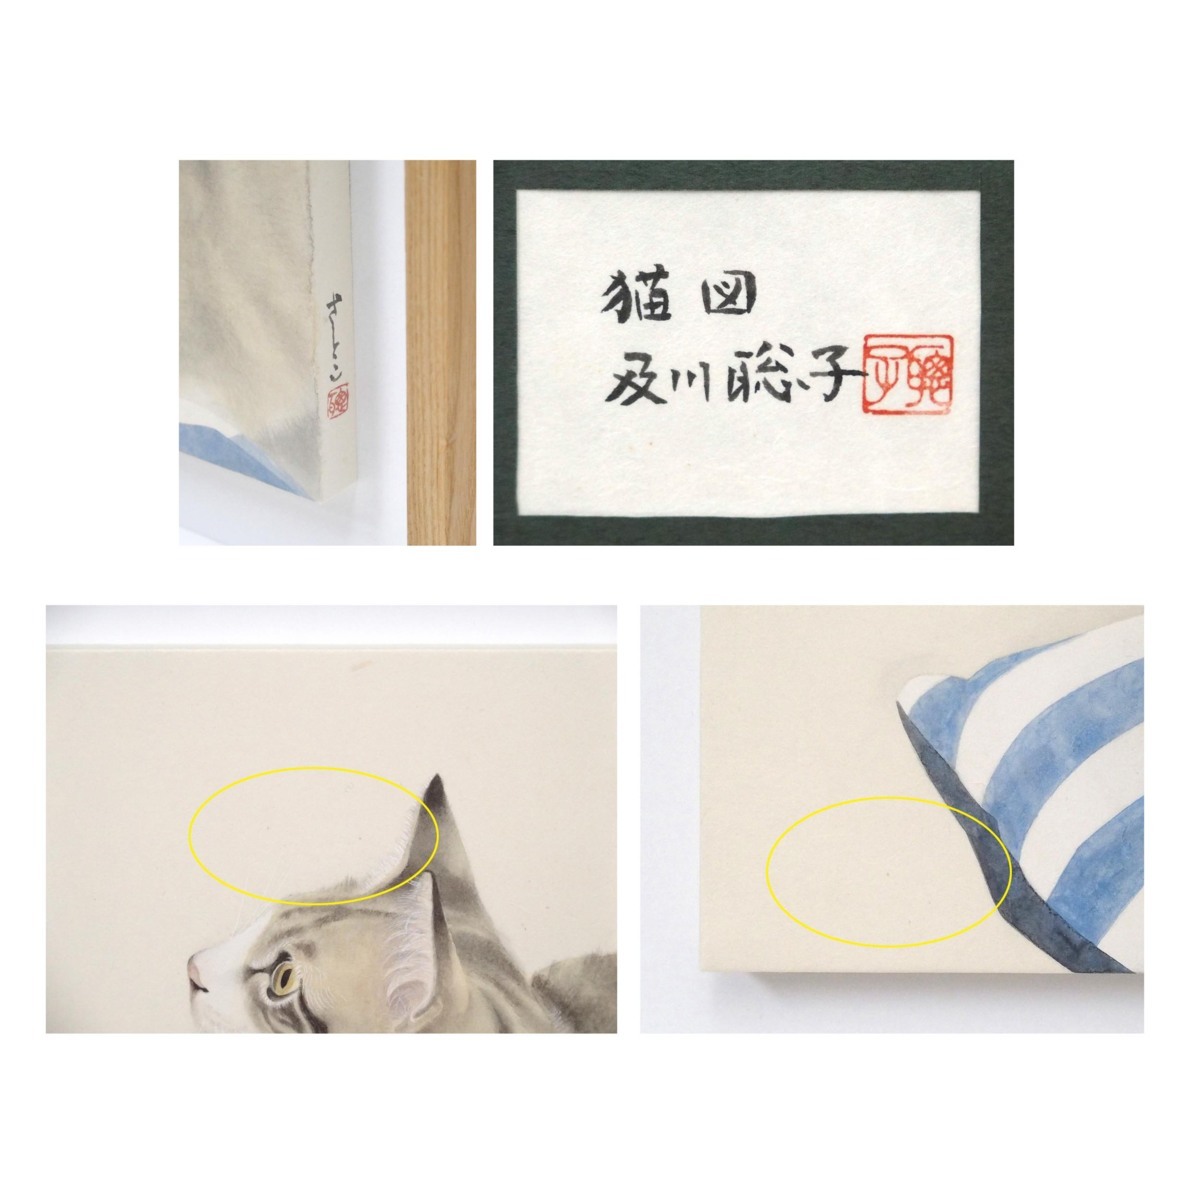 及川聡子 「猫図」 /紙本彩色4号/落款・共シール有り/飾りやすいサイズ